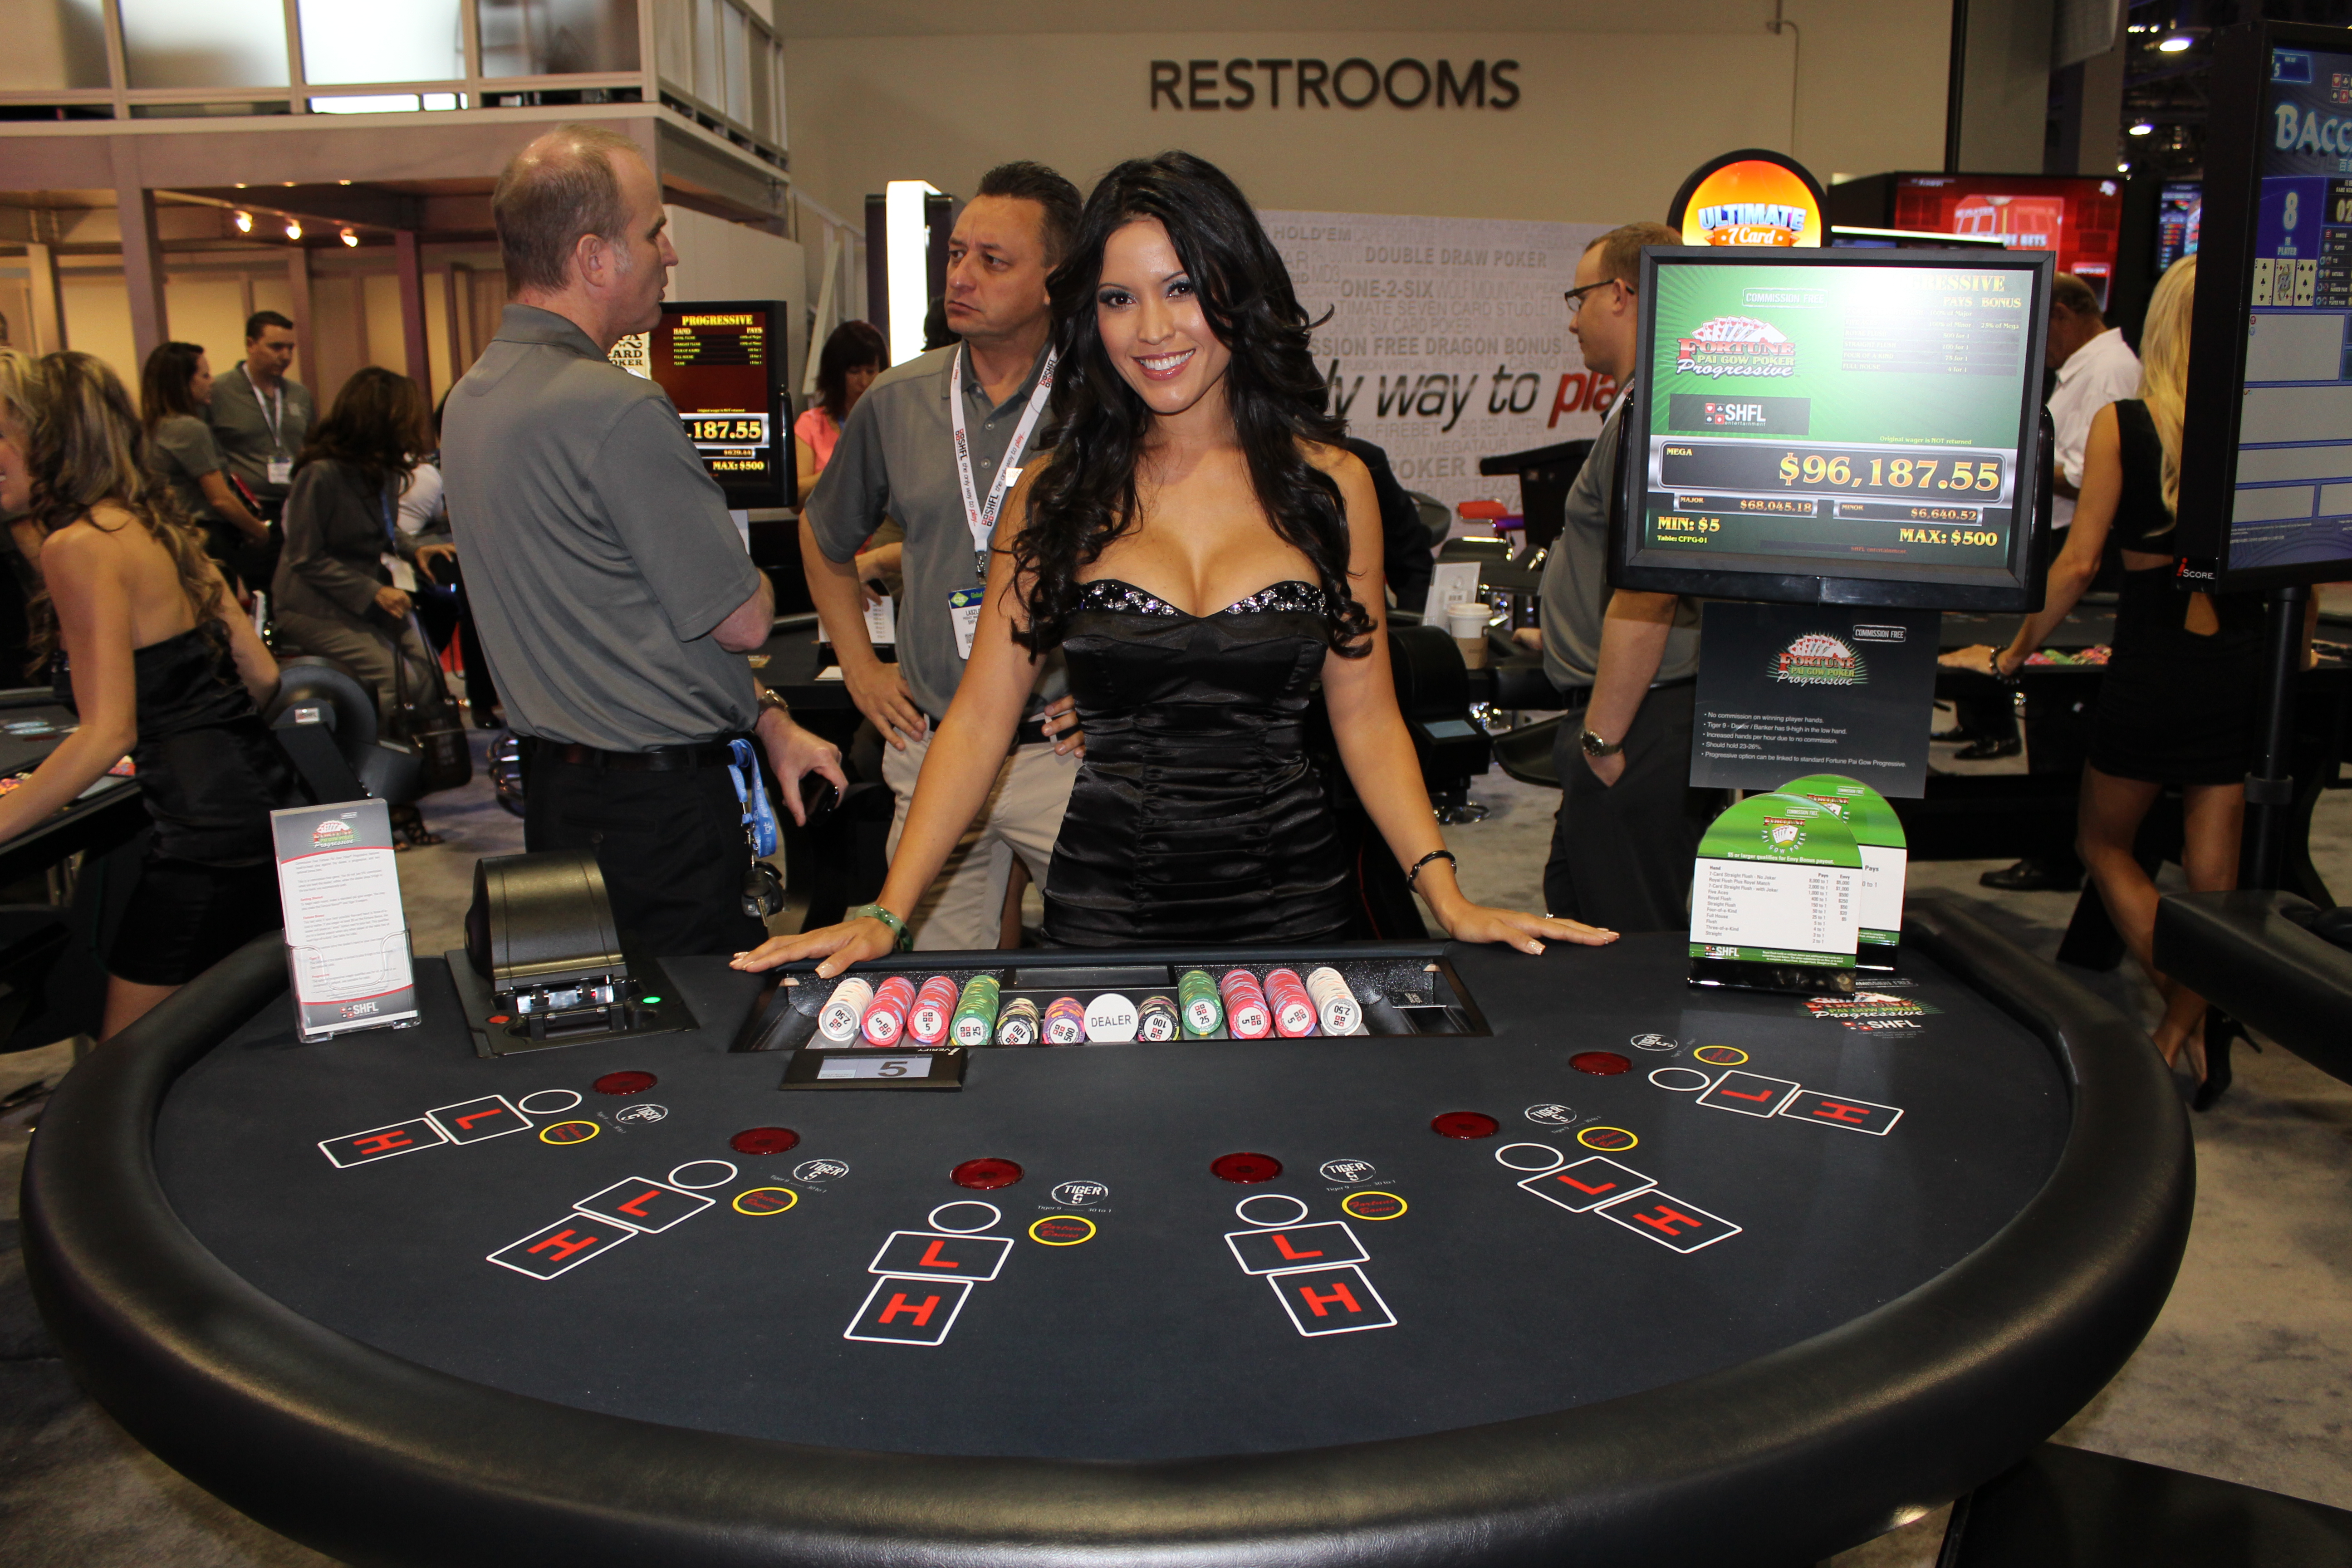 Free casino gaming узнать столото по номеру билета и тиражу